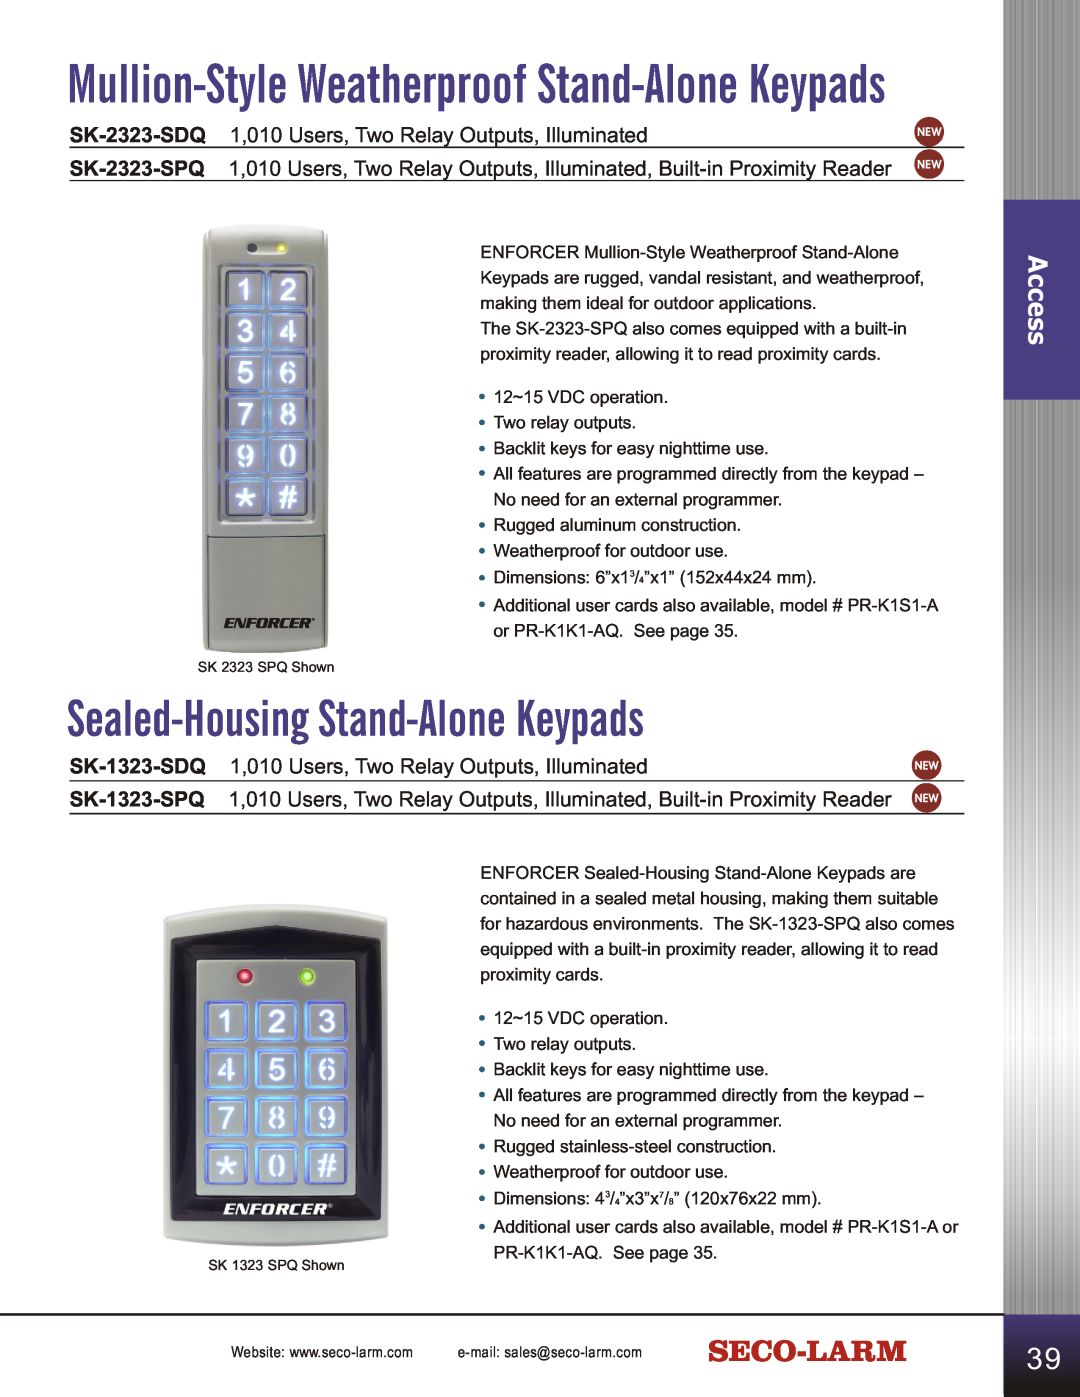 SECO-LARM USA SD-C141S manual Sealed-Housing Stand-AloneKeypads, Mullion-StyleWeatherproof Stand-AloneKeypads, Access 